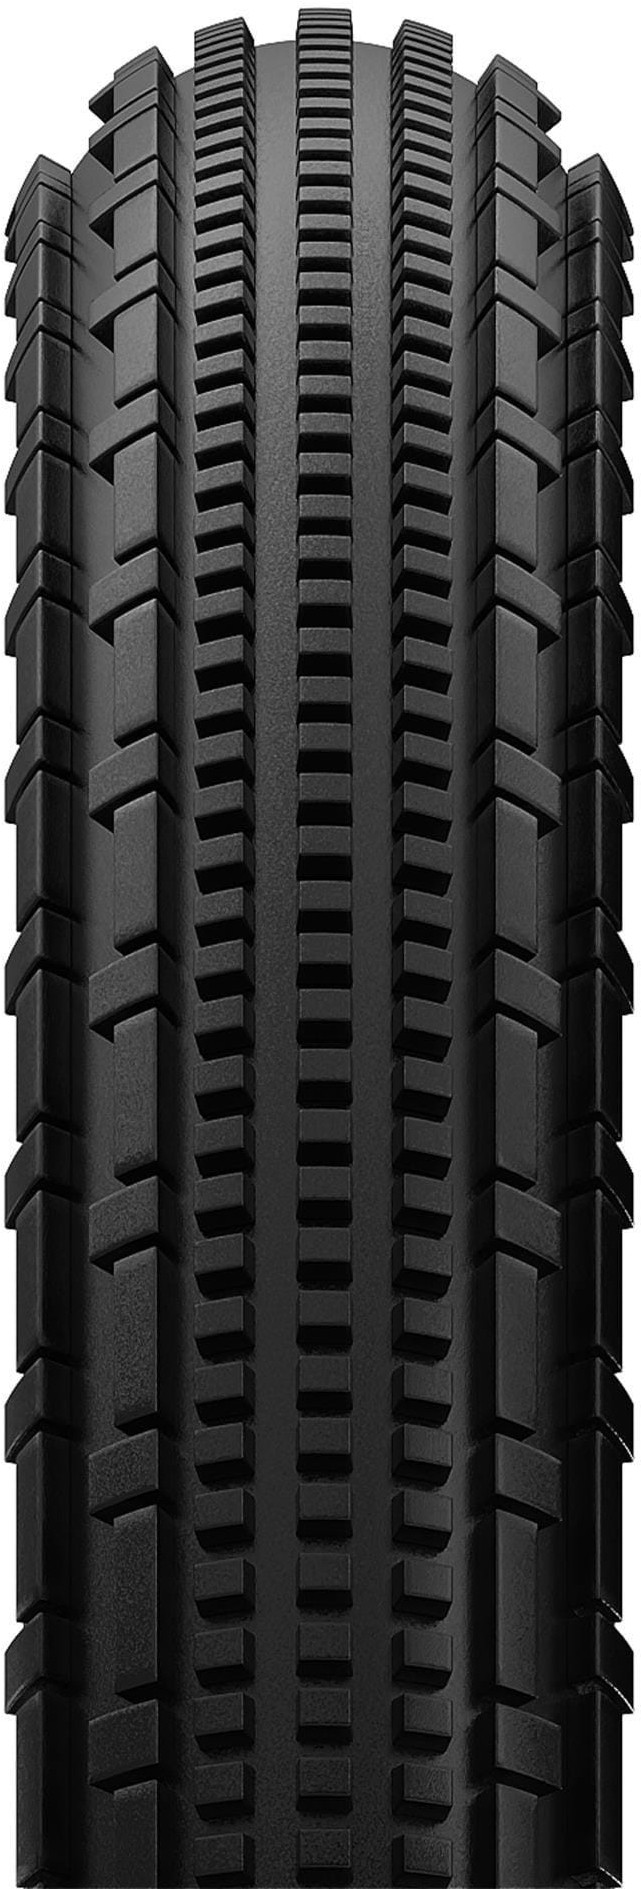 Gravelking SK 650b Gravel Tyre image 1